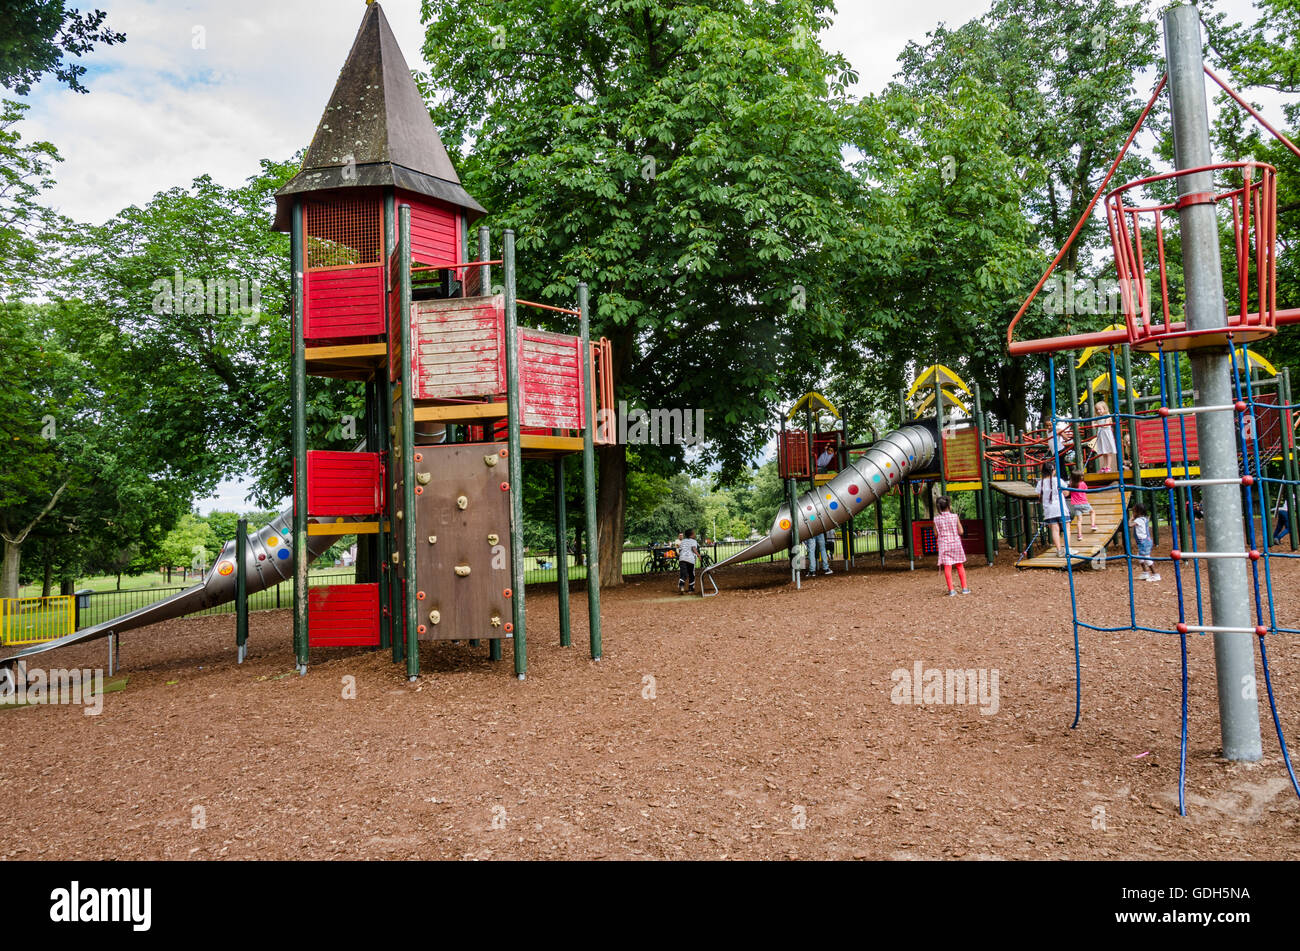 La recherche à travers l'aire de jeux pour enfants dans la région de Prospect Park, lecture. Banque D'Images